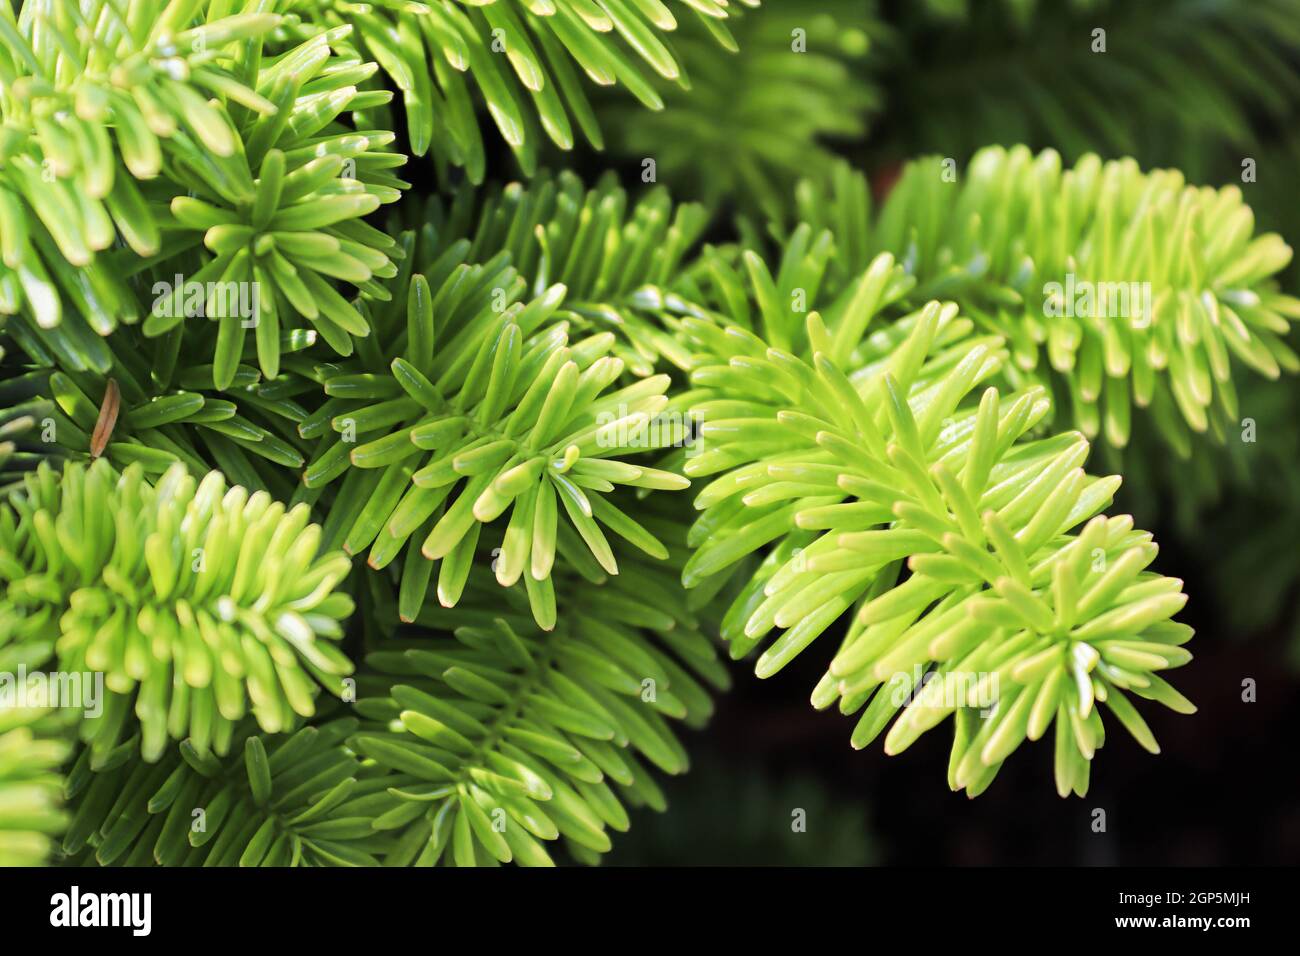 Closeup of the needles on a dwarf balsam fir. Stock Photo